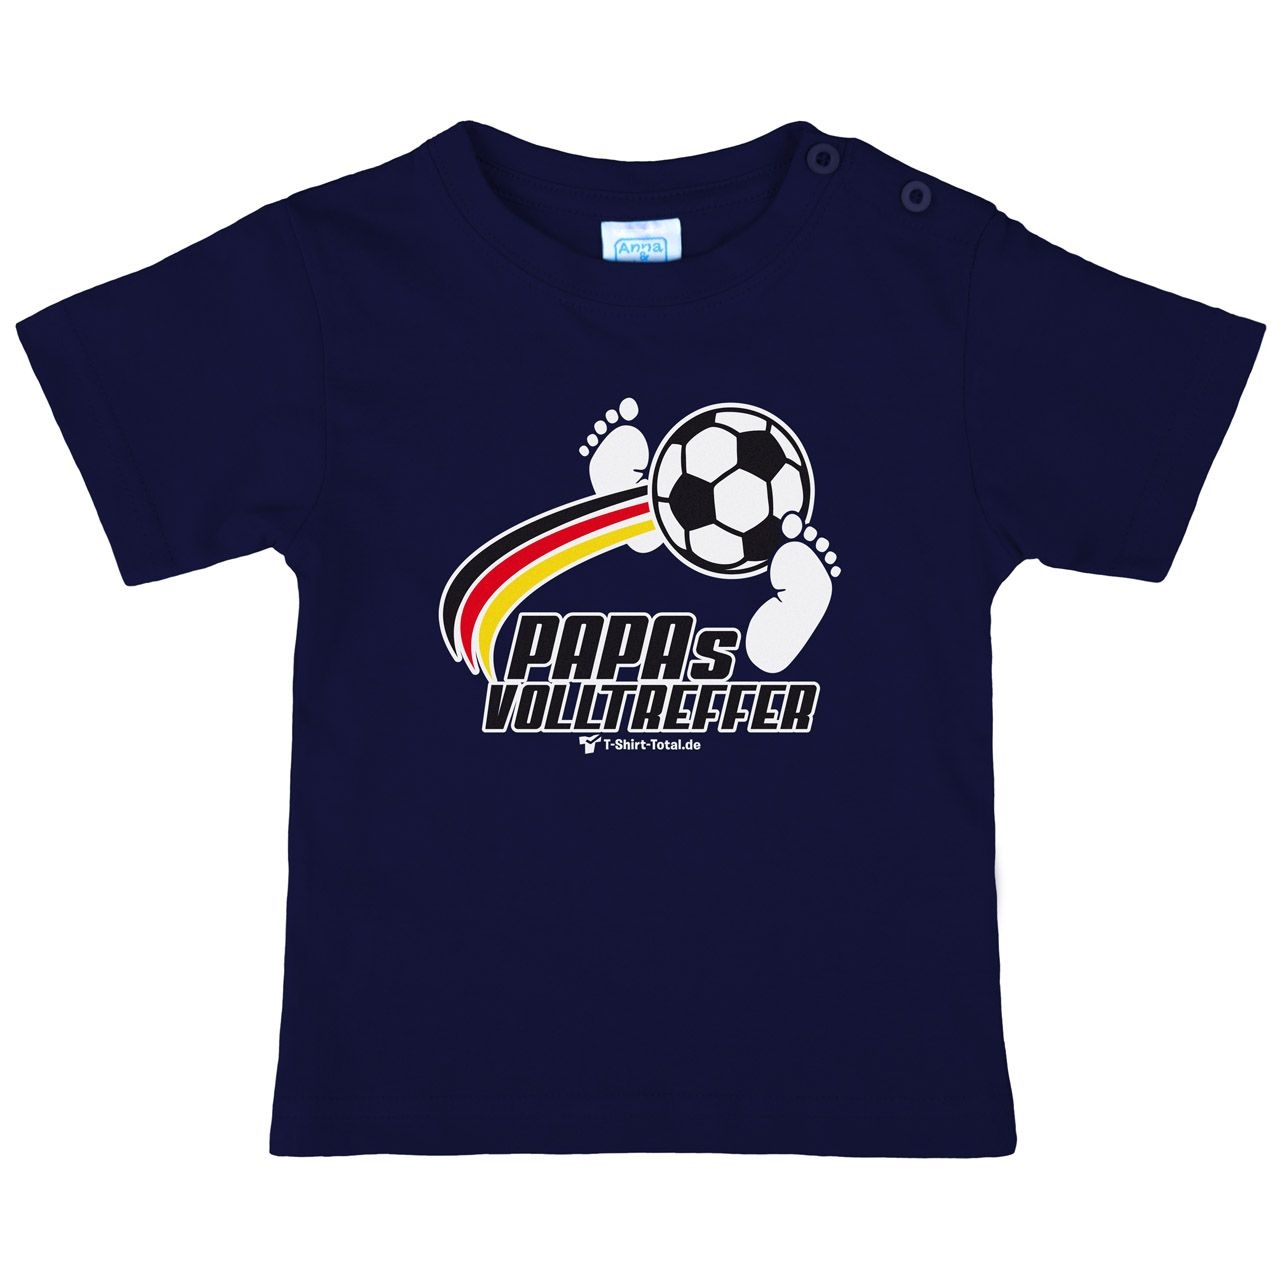 Papas Volltreffer Kinder T-Shirt navy 56 / 62